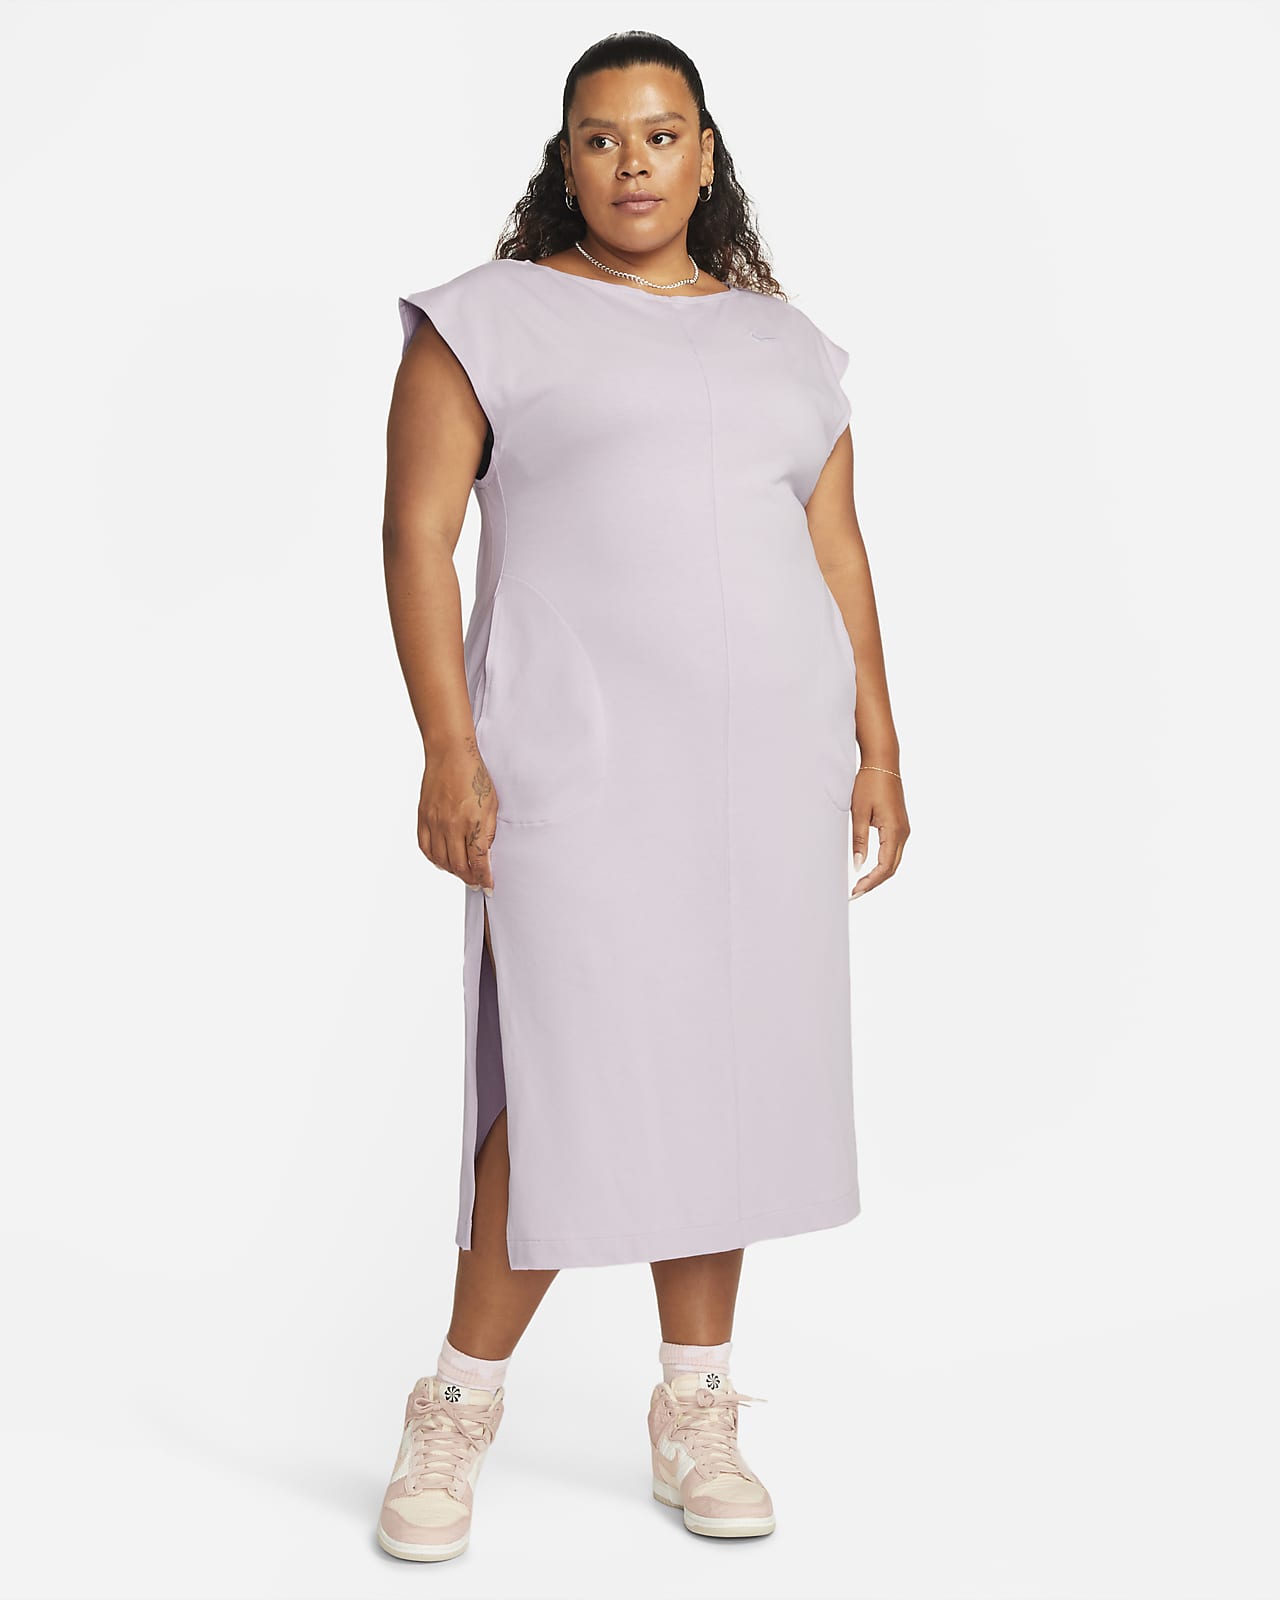 Women's Short-Sleeve Midi Dress (Plus Size). Nike.com